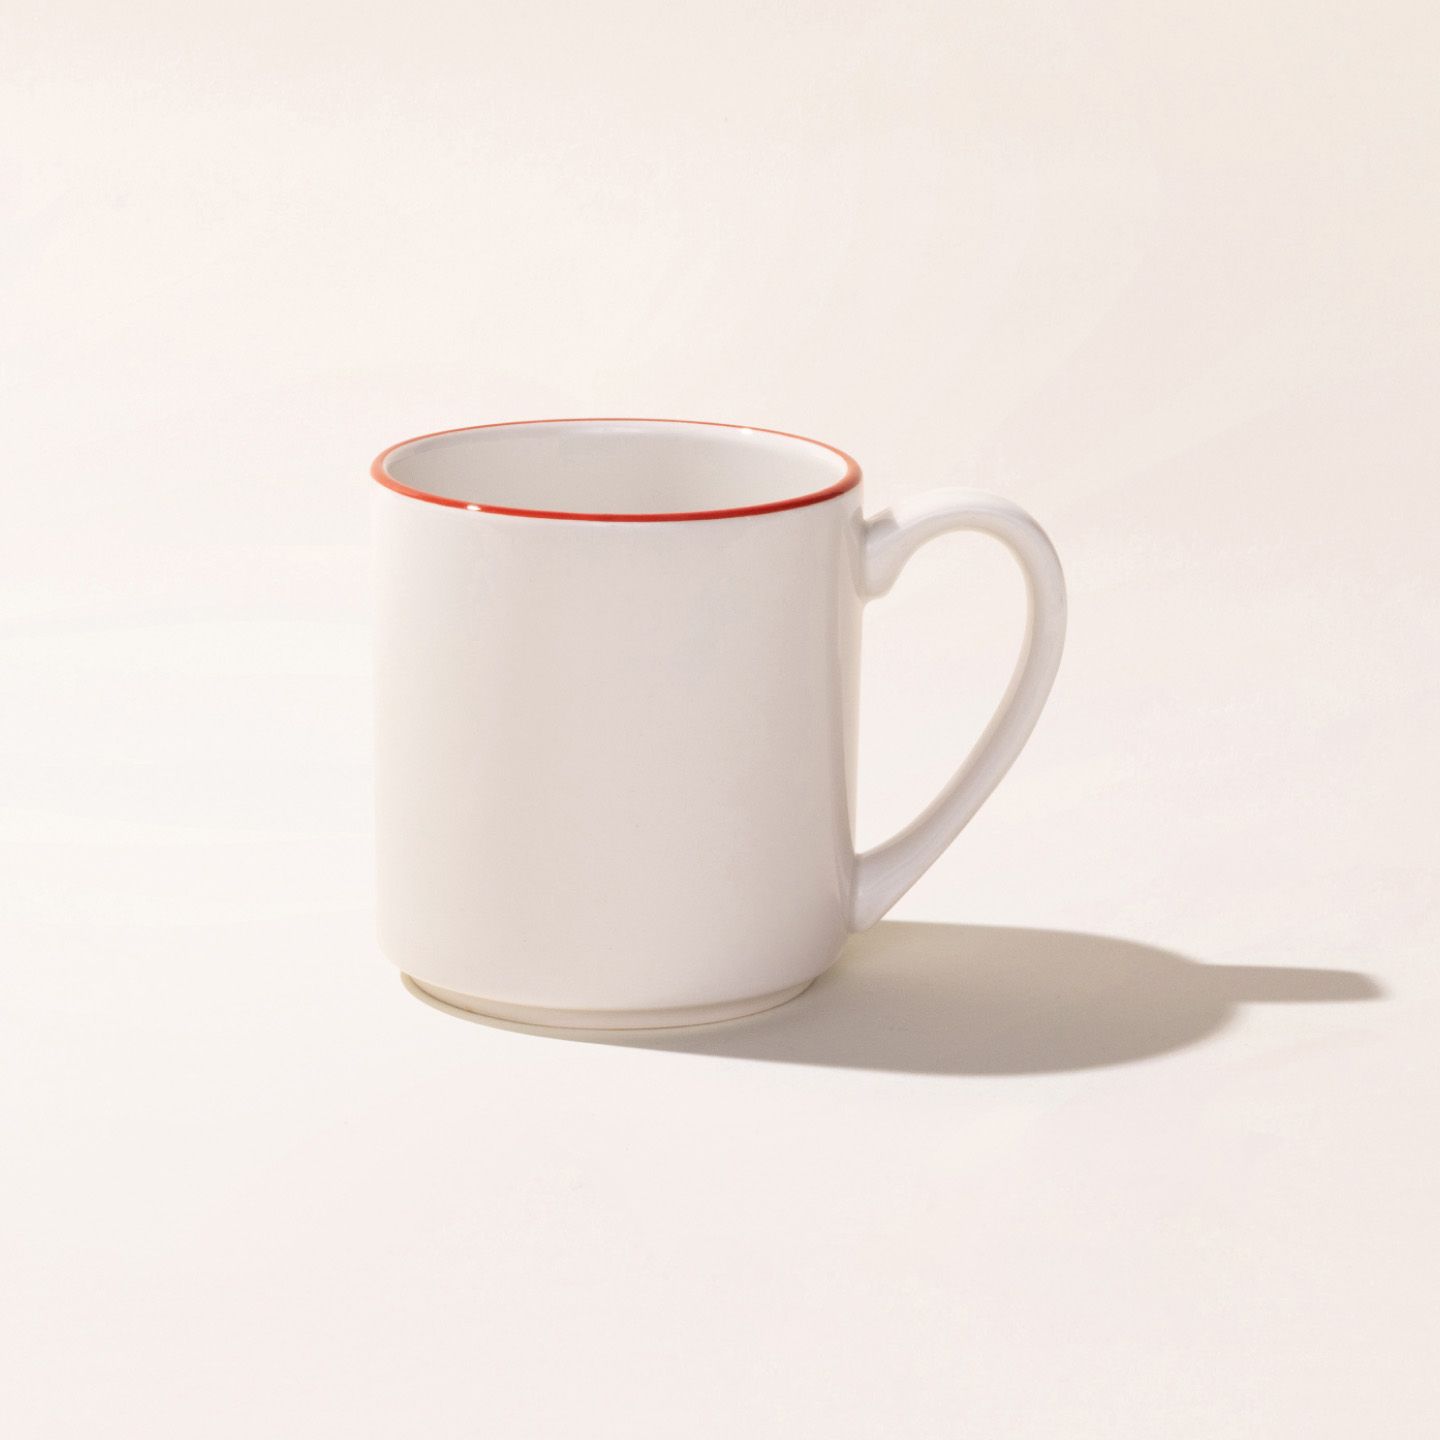 Denmark Tools for Cooks, Latte Mug, Set of 4